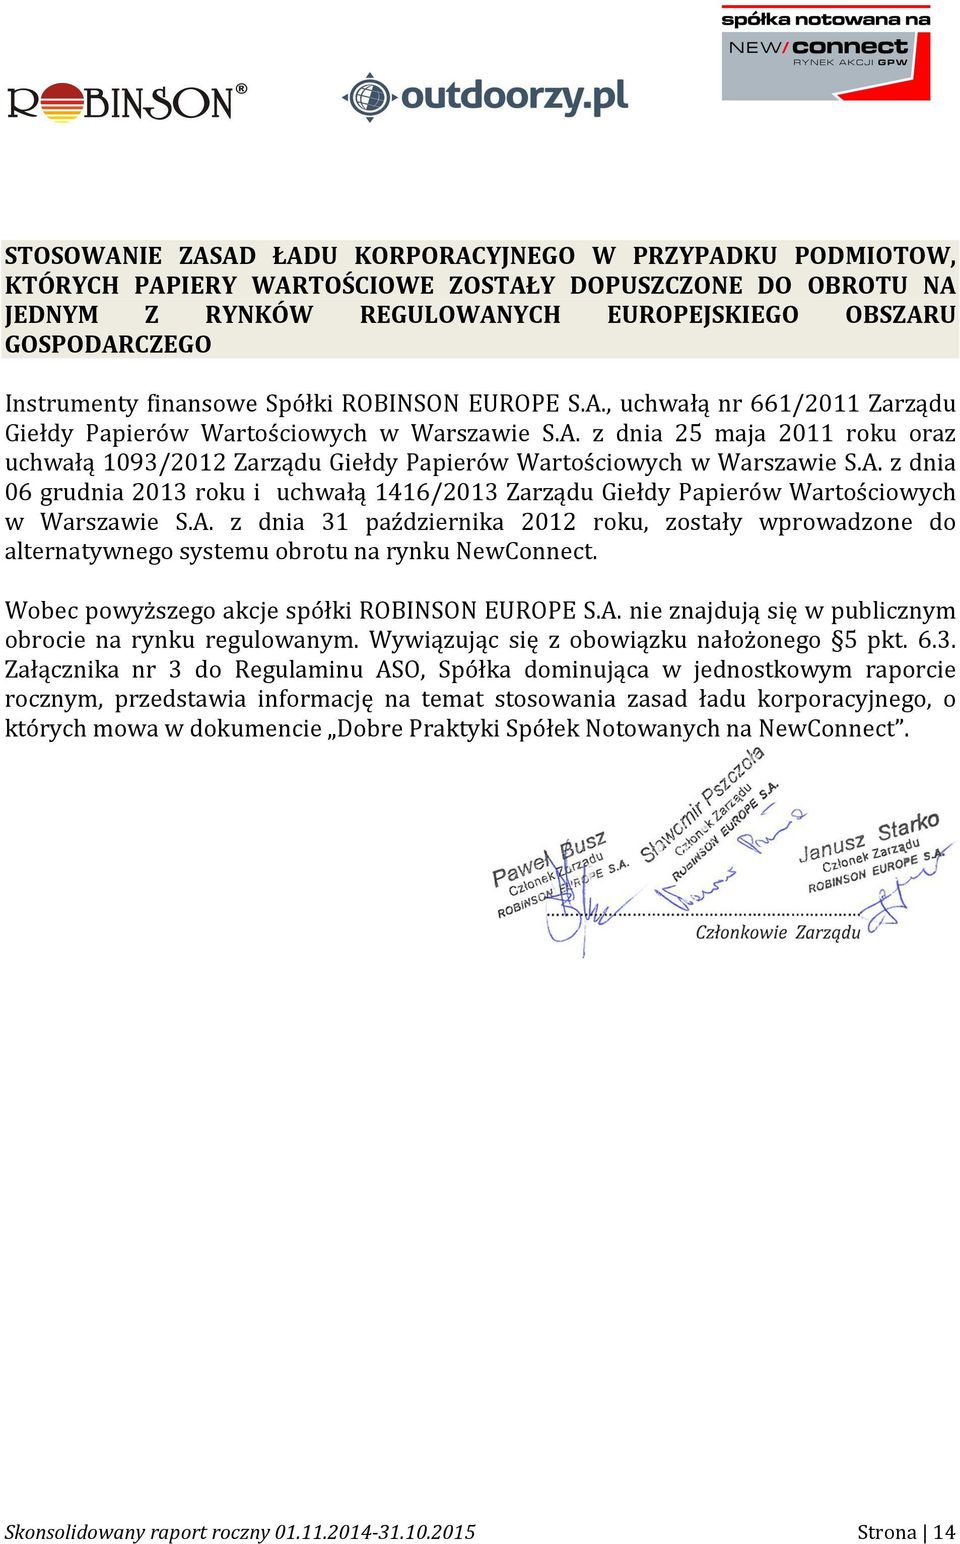 A. z dnia 06 grudnia 2013 roku i uchwałą 1416/2013 Zarządu Giełdy Papierów Wartościowych w Warszawie S.A. z dnia 31 października 2012 roku, zostały wprowadzone do alternatywnego systemu obrotu na rynku NewConnect.